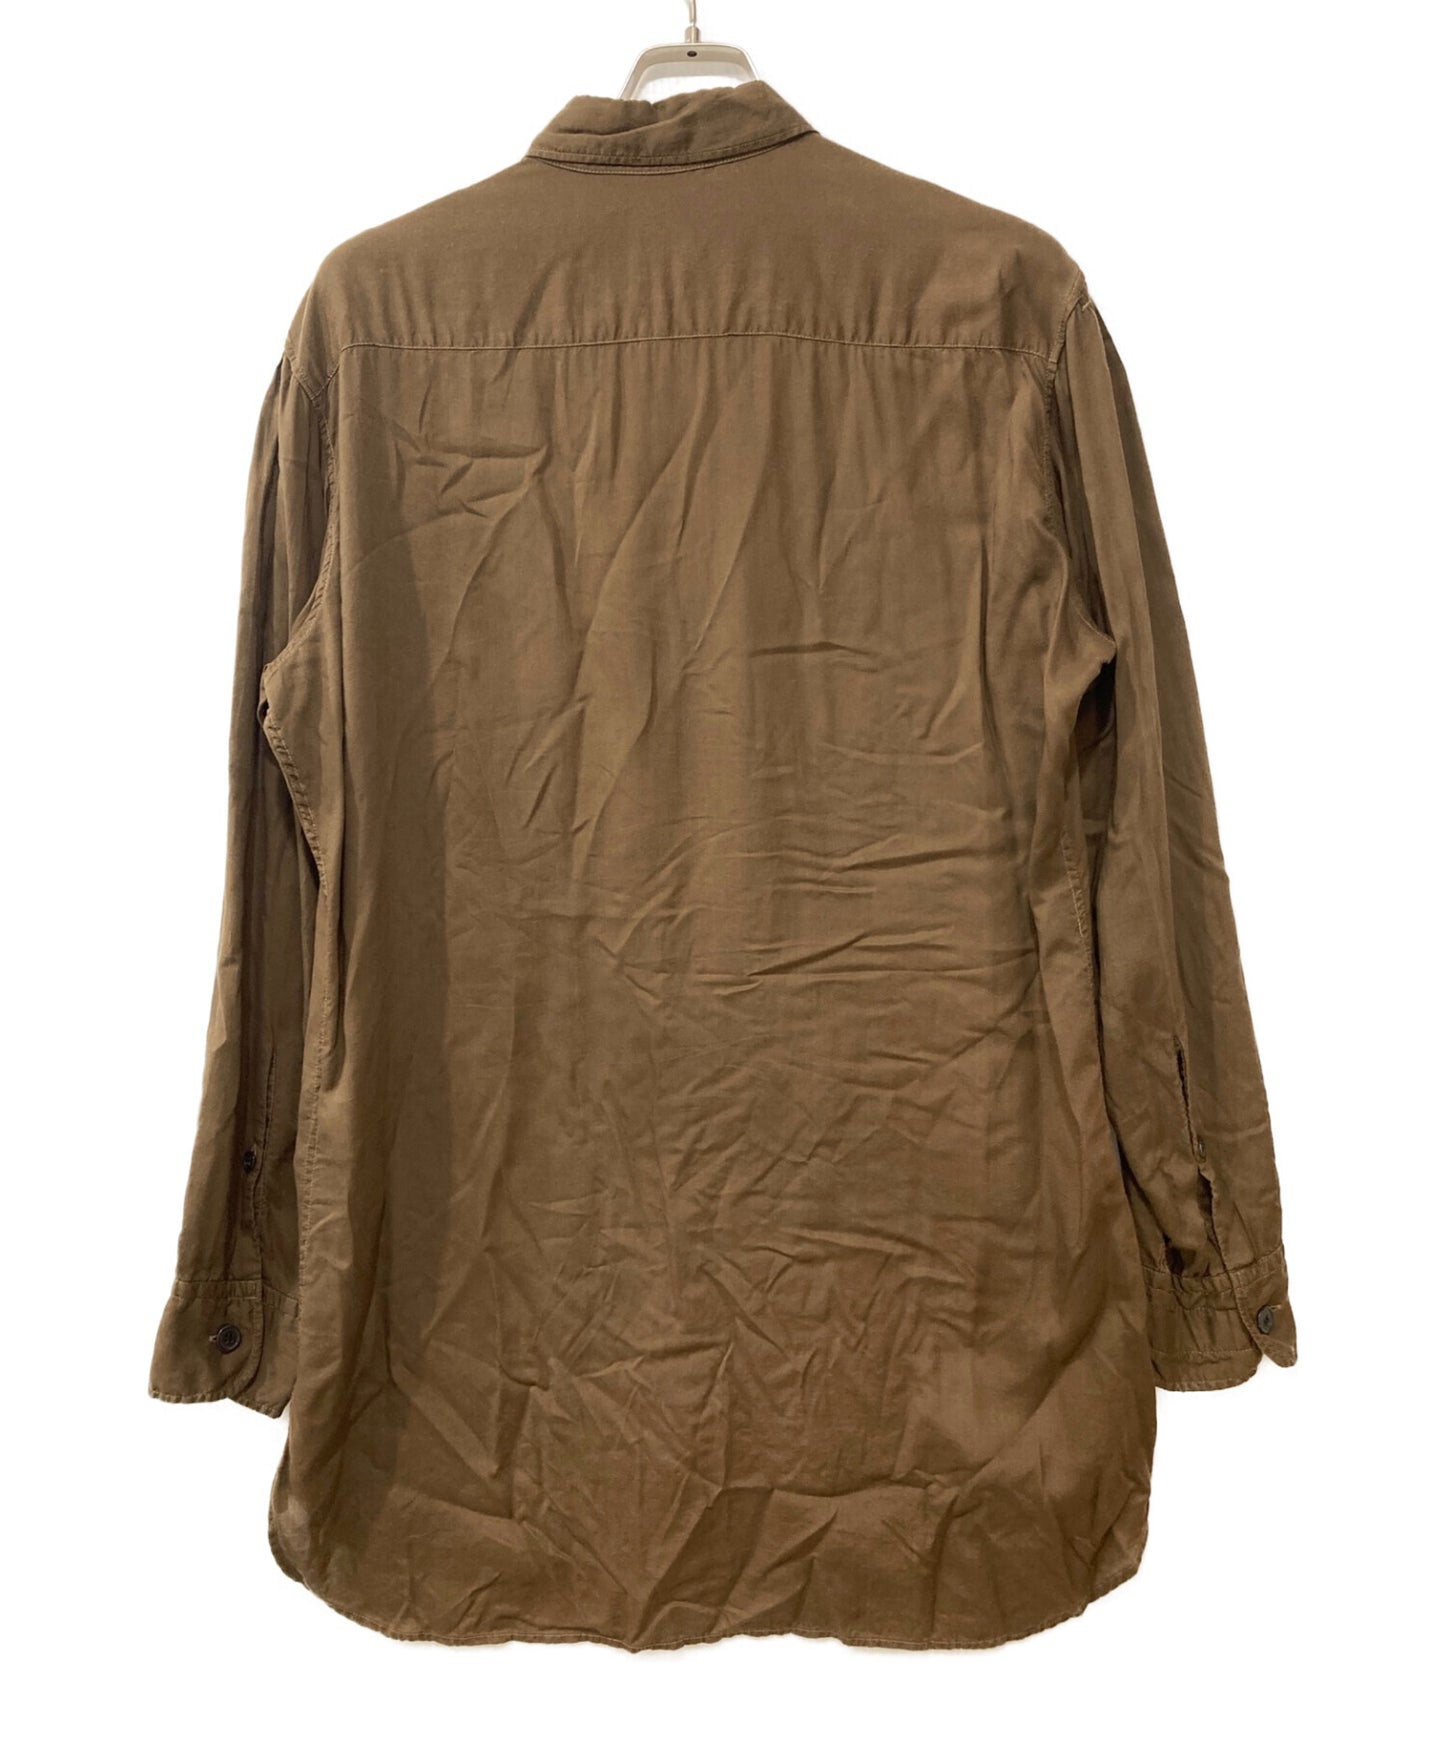 Yohji Yamamoto Pour Homme Product 3件衣領襯衫HX-B06-200